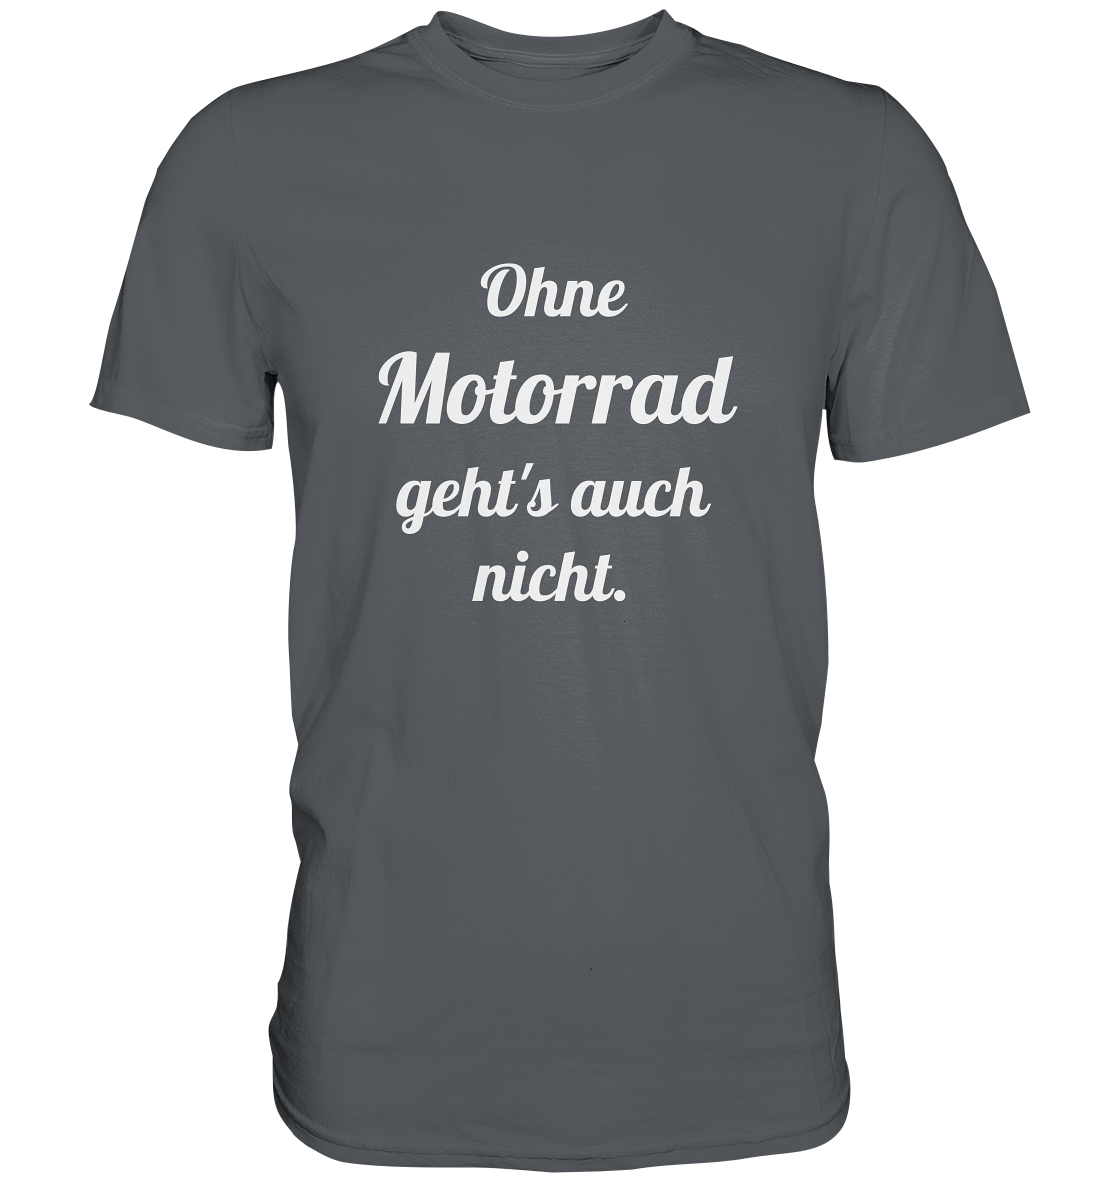 Herren-T-Shirt, Rundhals mit Aufdruck "Ohne Motorrad geht's auch nicht", grau